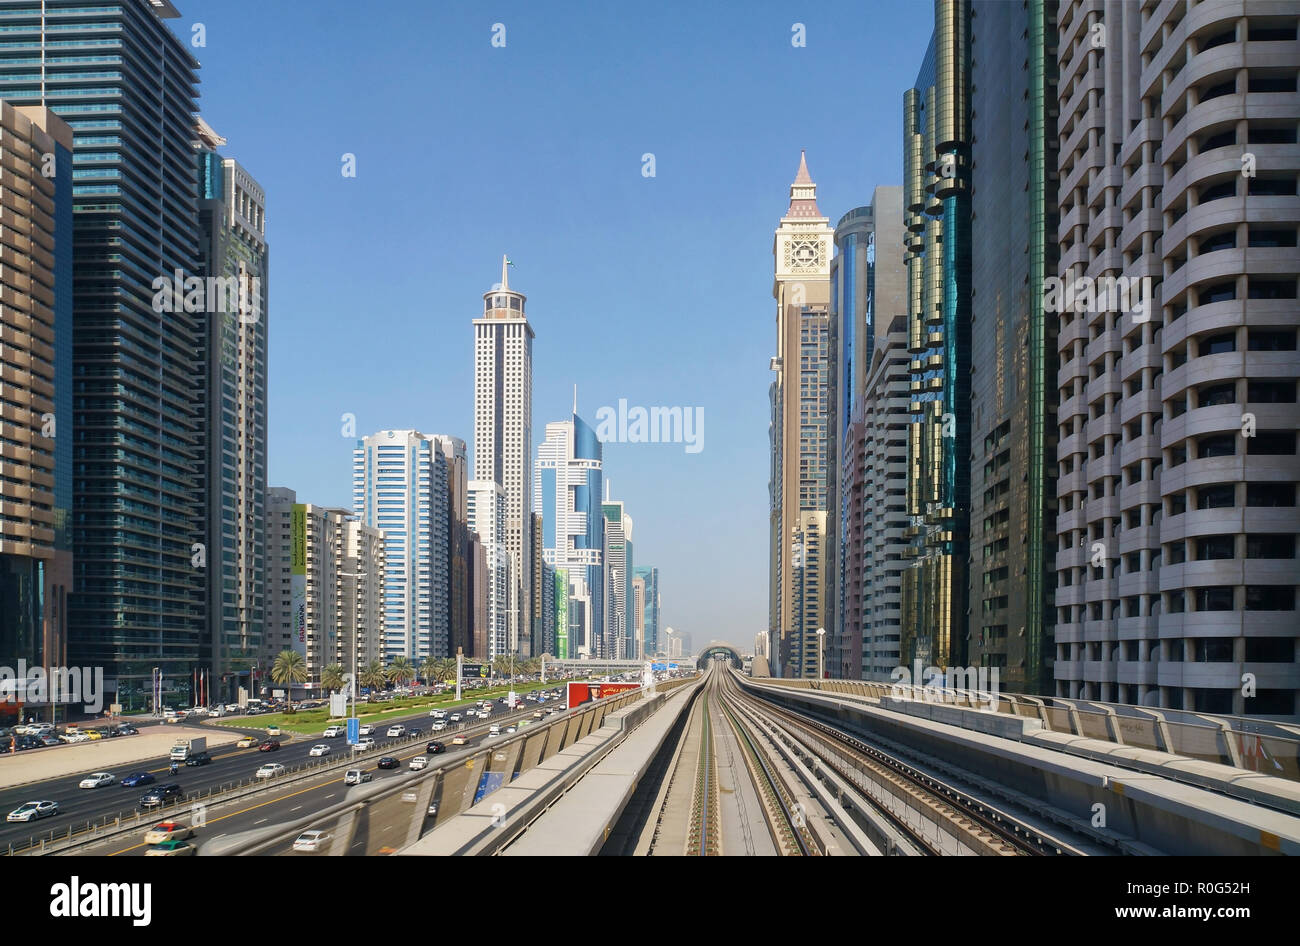 Dubai, Vereinigte Arabische Emirate - November 23, 2014: szenische sonnige Stadtbild von modernen Wolkenkratzer an der Sheikh Zayed Highway in Dubai, VAE. Die Skyline der Stadt mit Stockfoto